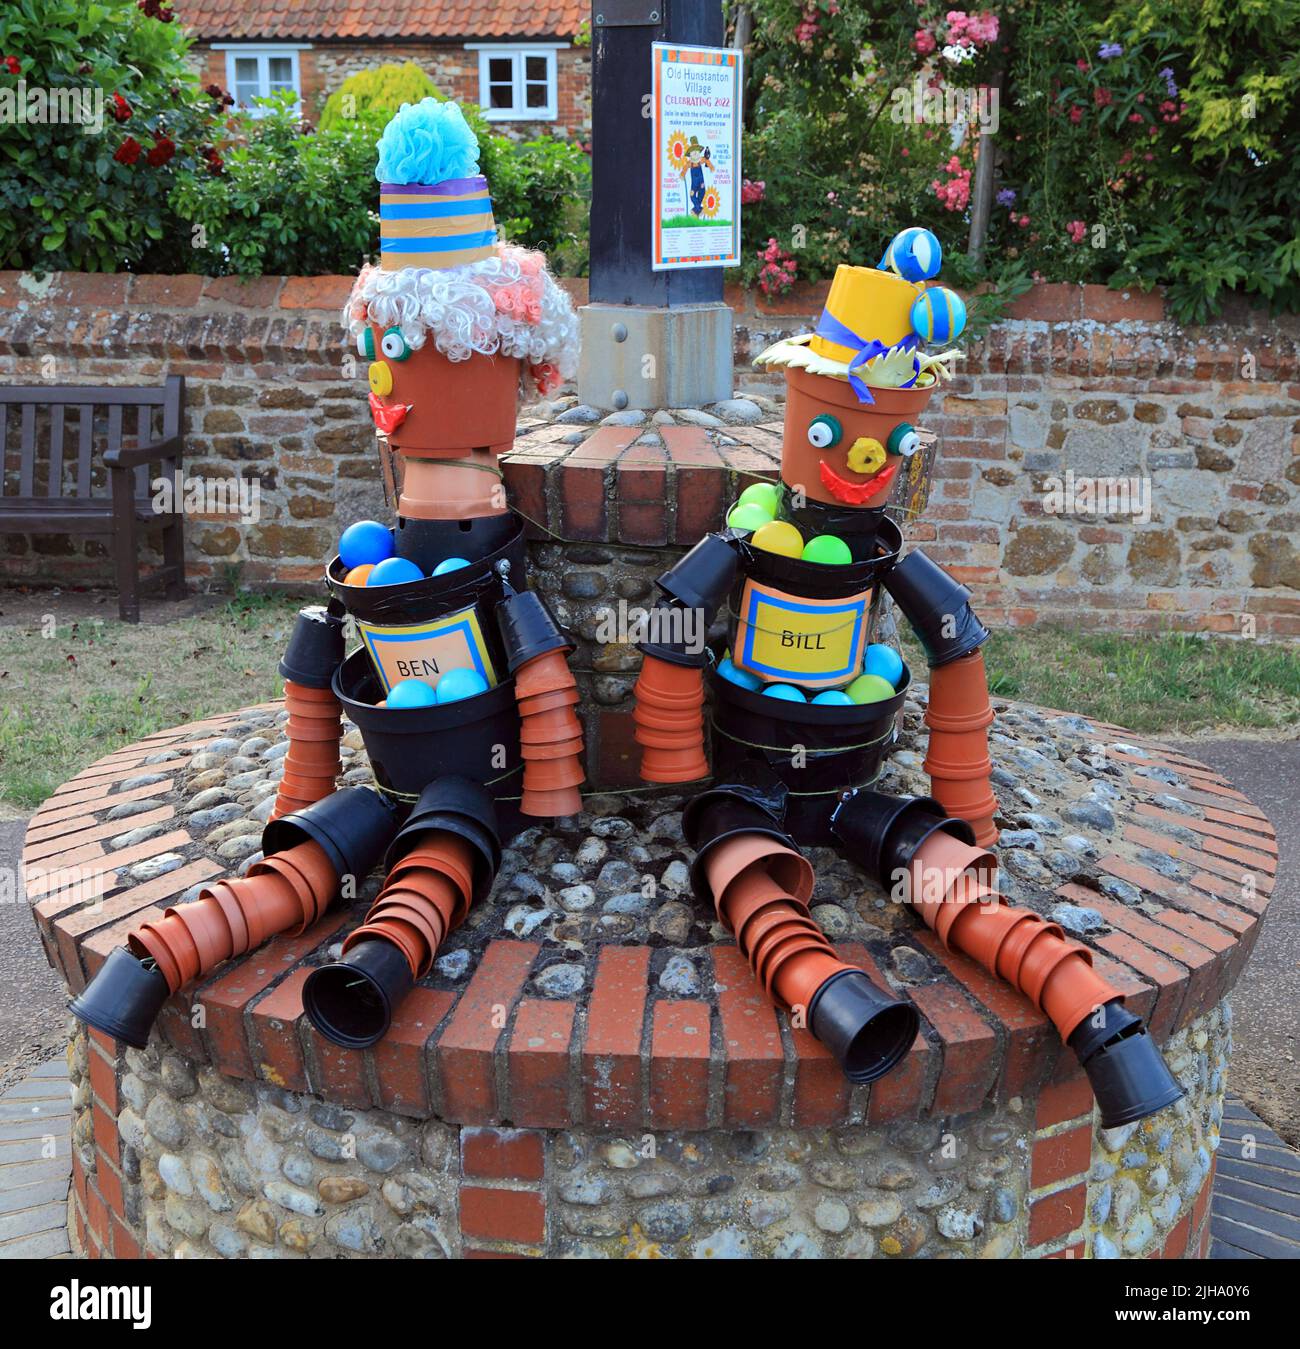 Bill et Ben, Flowerpot Men, décoration de festival, modèles, marionnettes, Old Hunstanton Village , Norfolk, Angleterre Banque D'Images